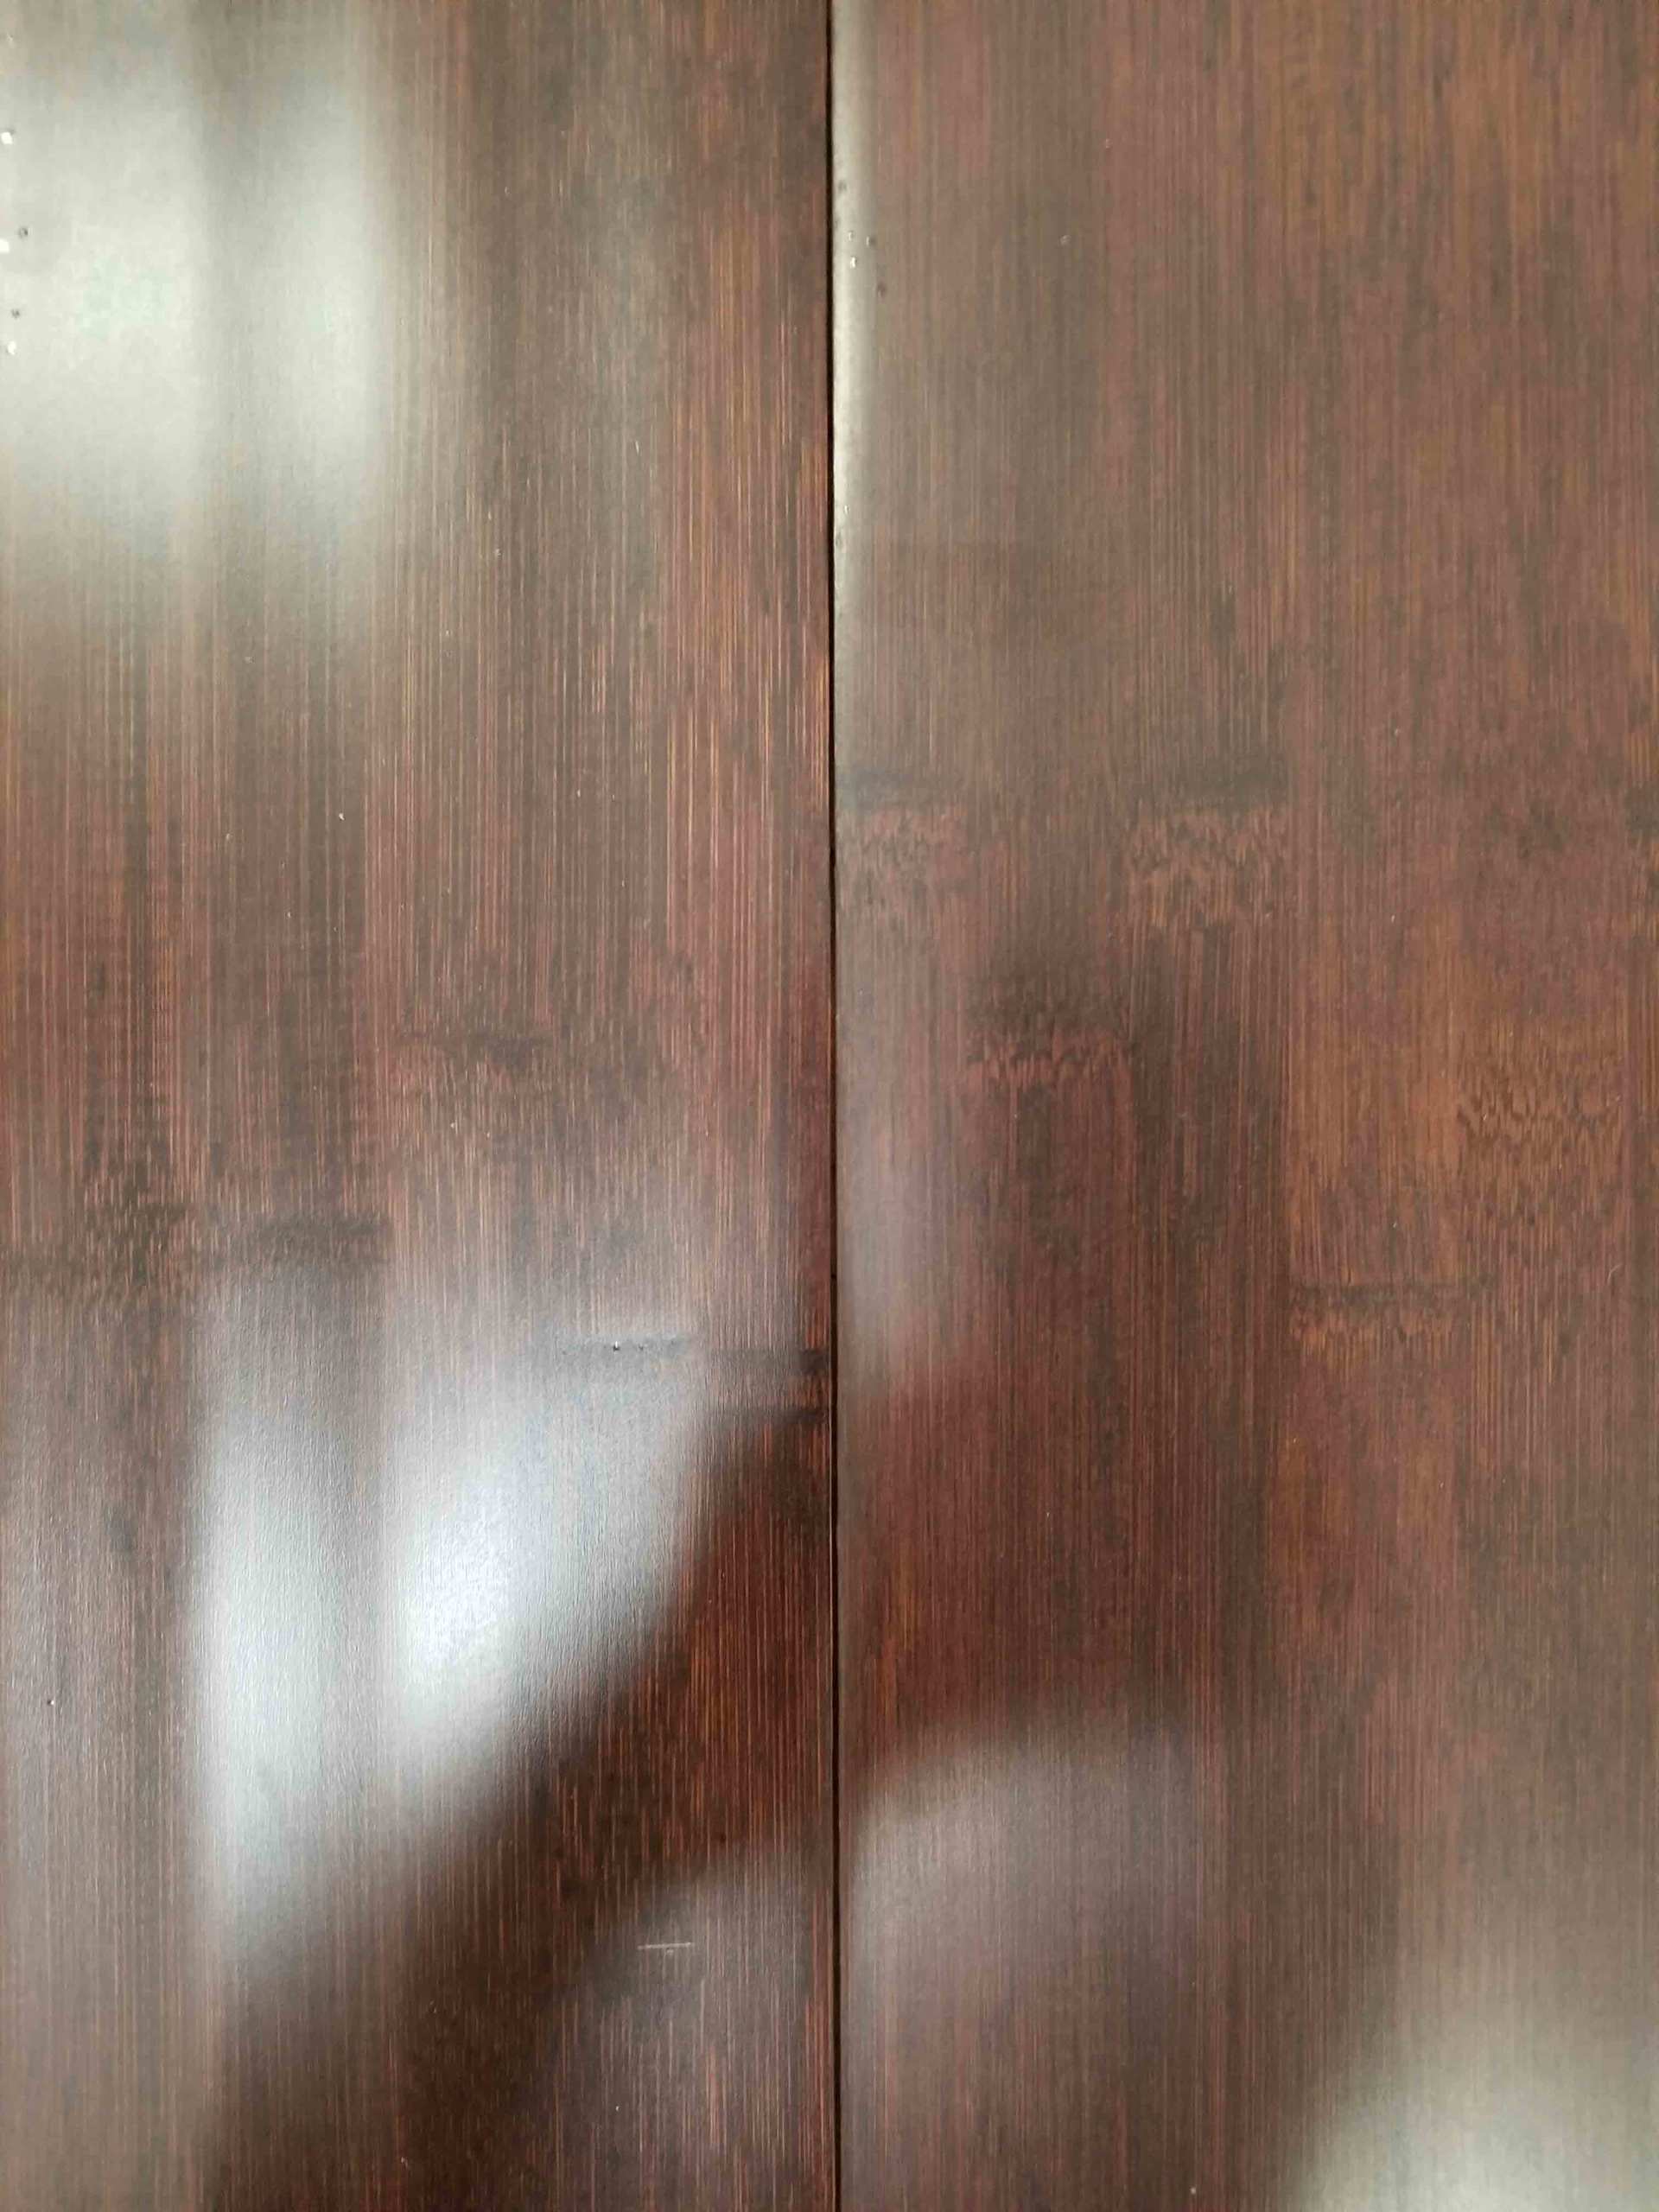 Wood Look Vinyl Plank and Marble Tile — Hardwood Floor With SKU Number DB1151HL31 in Saint Petersburg, FL